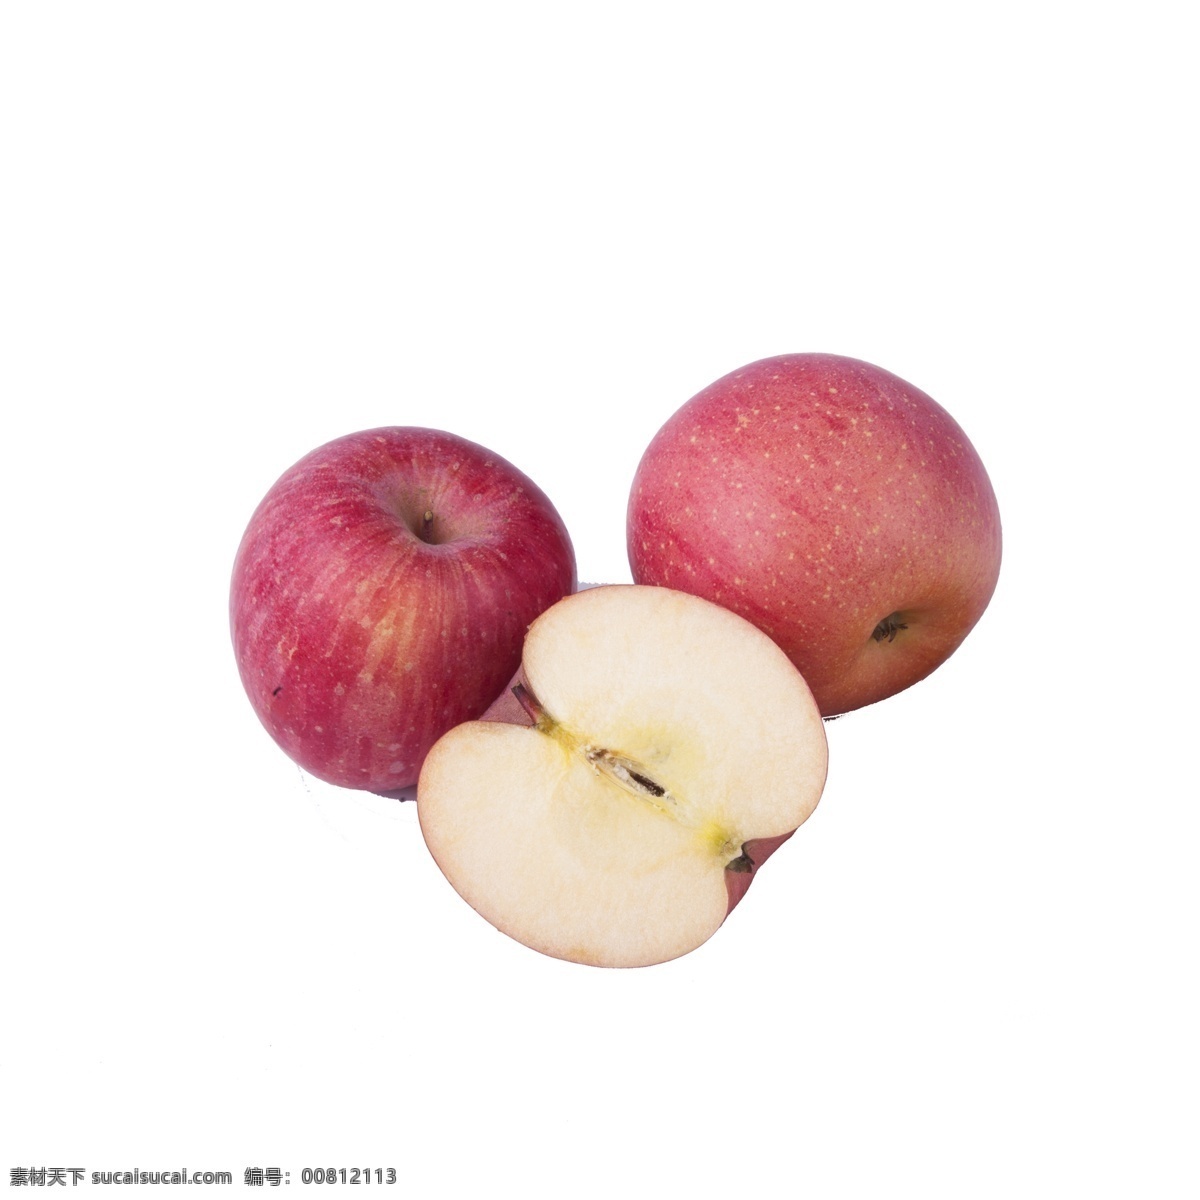 红色 新鲜 水果 免 抠 图 苹果水果 苹果 红通通 美味的苹果 生态水果 植物果实 切开的苹果 红色的苹果 免抠图